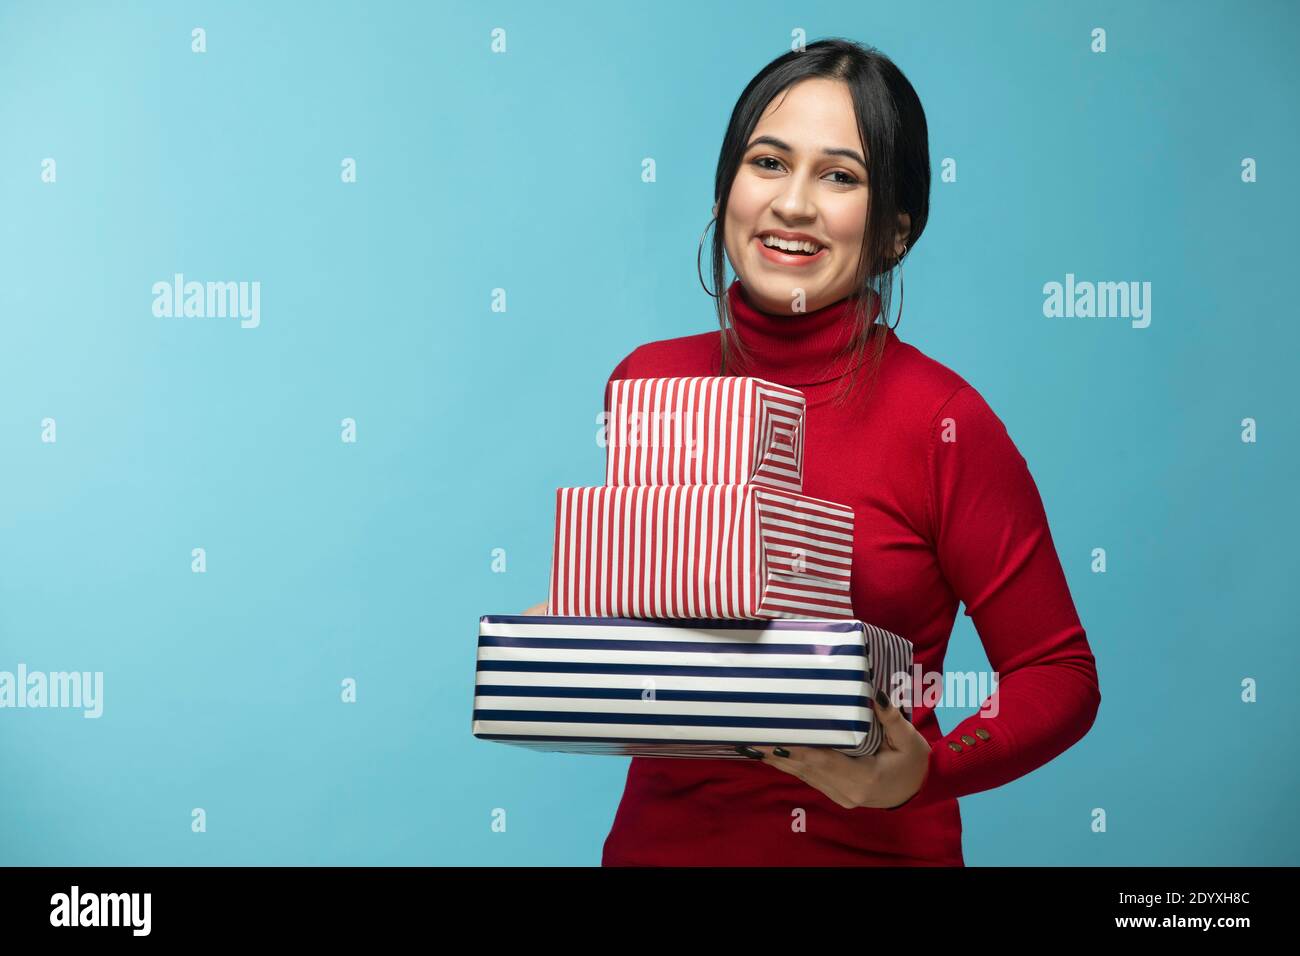 Retrato de una mujer joven que viste una sudadera roja y que sostiene un regalo caja en la mano Foto de stock